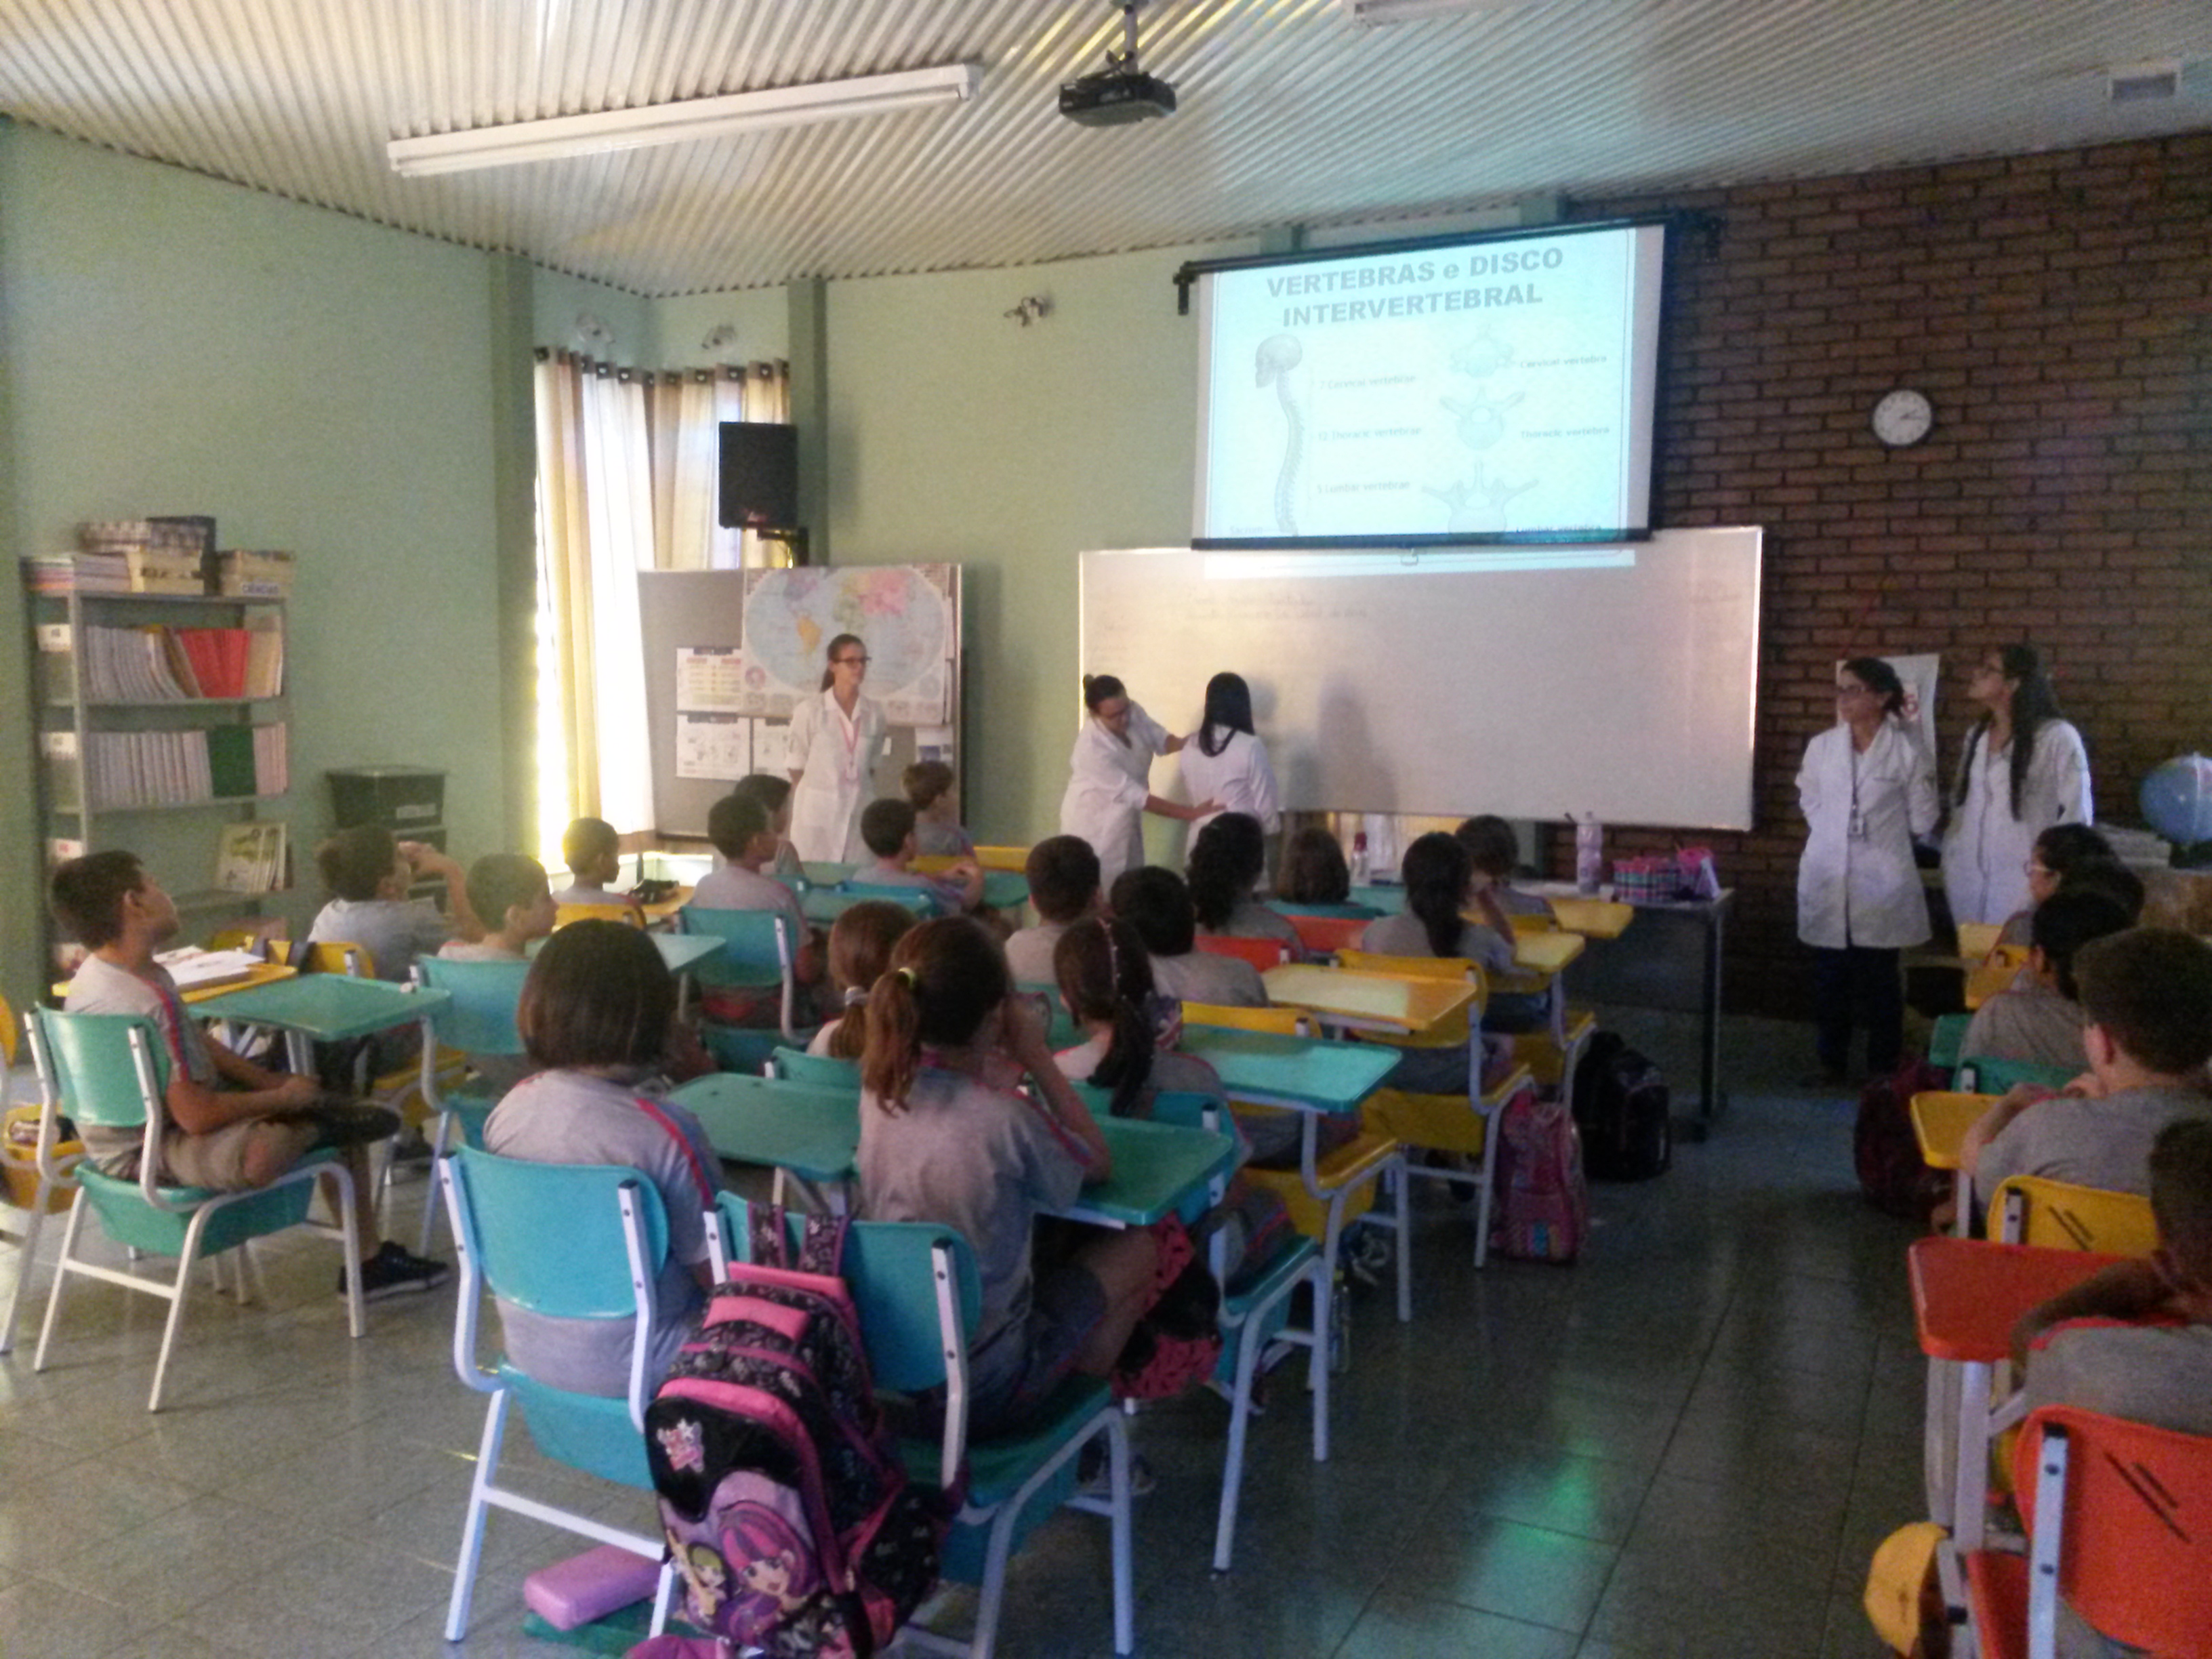 Alunos do Curso de Fisioterapia realizam palestra de Orientação Postural em escolas de Bragança Paulista